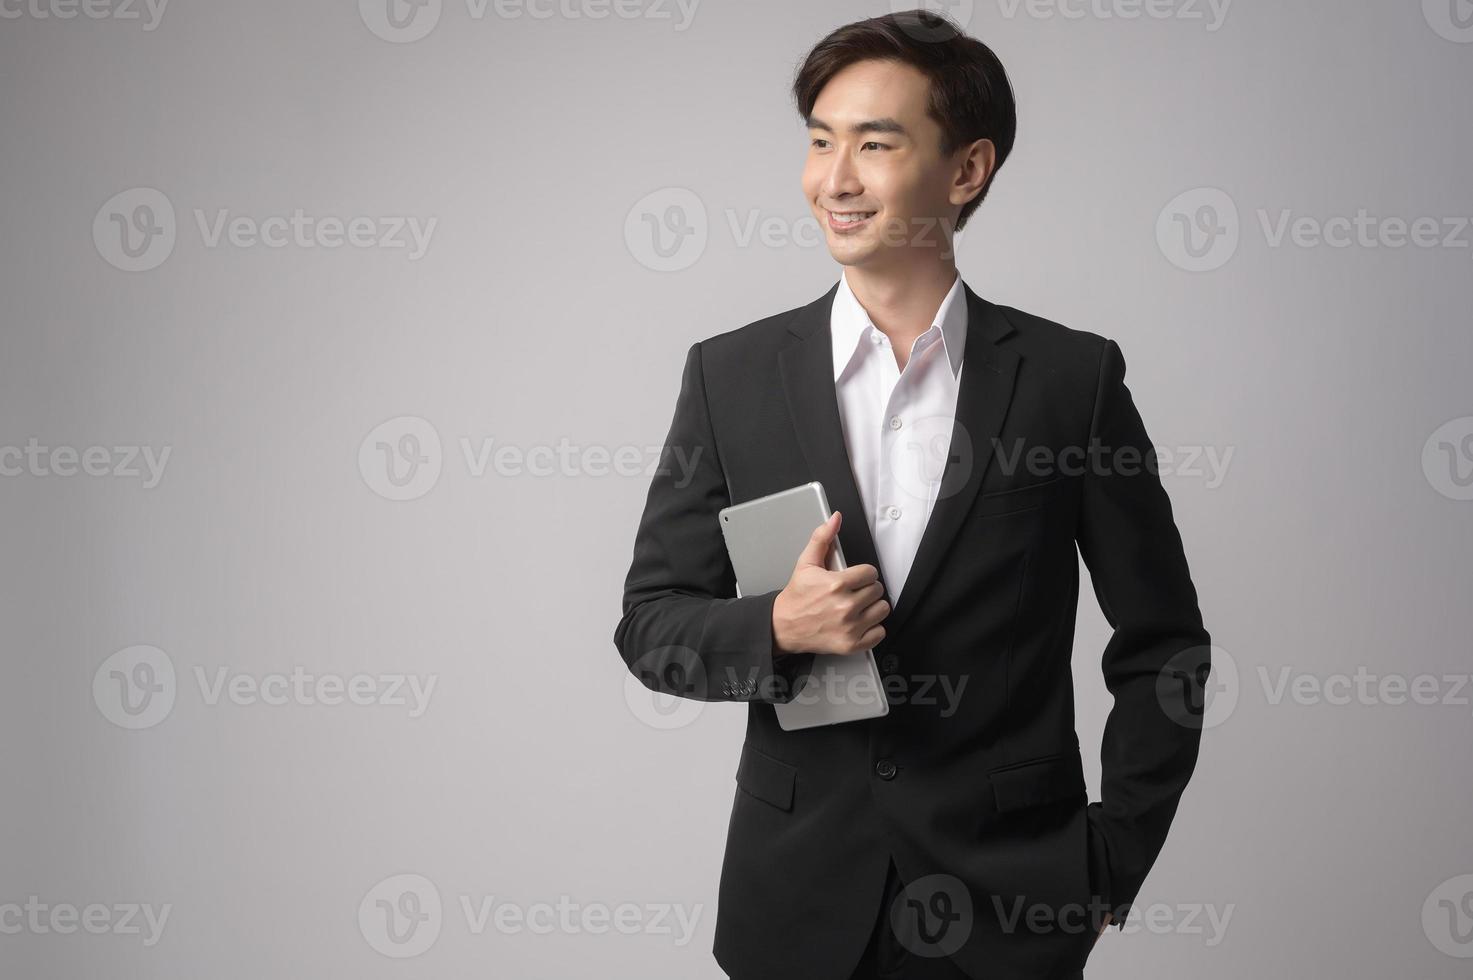 jeune homme d'affaires portant costume sur fond blanc studio photo